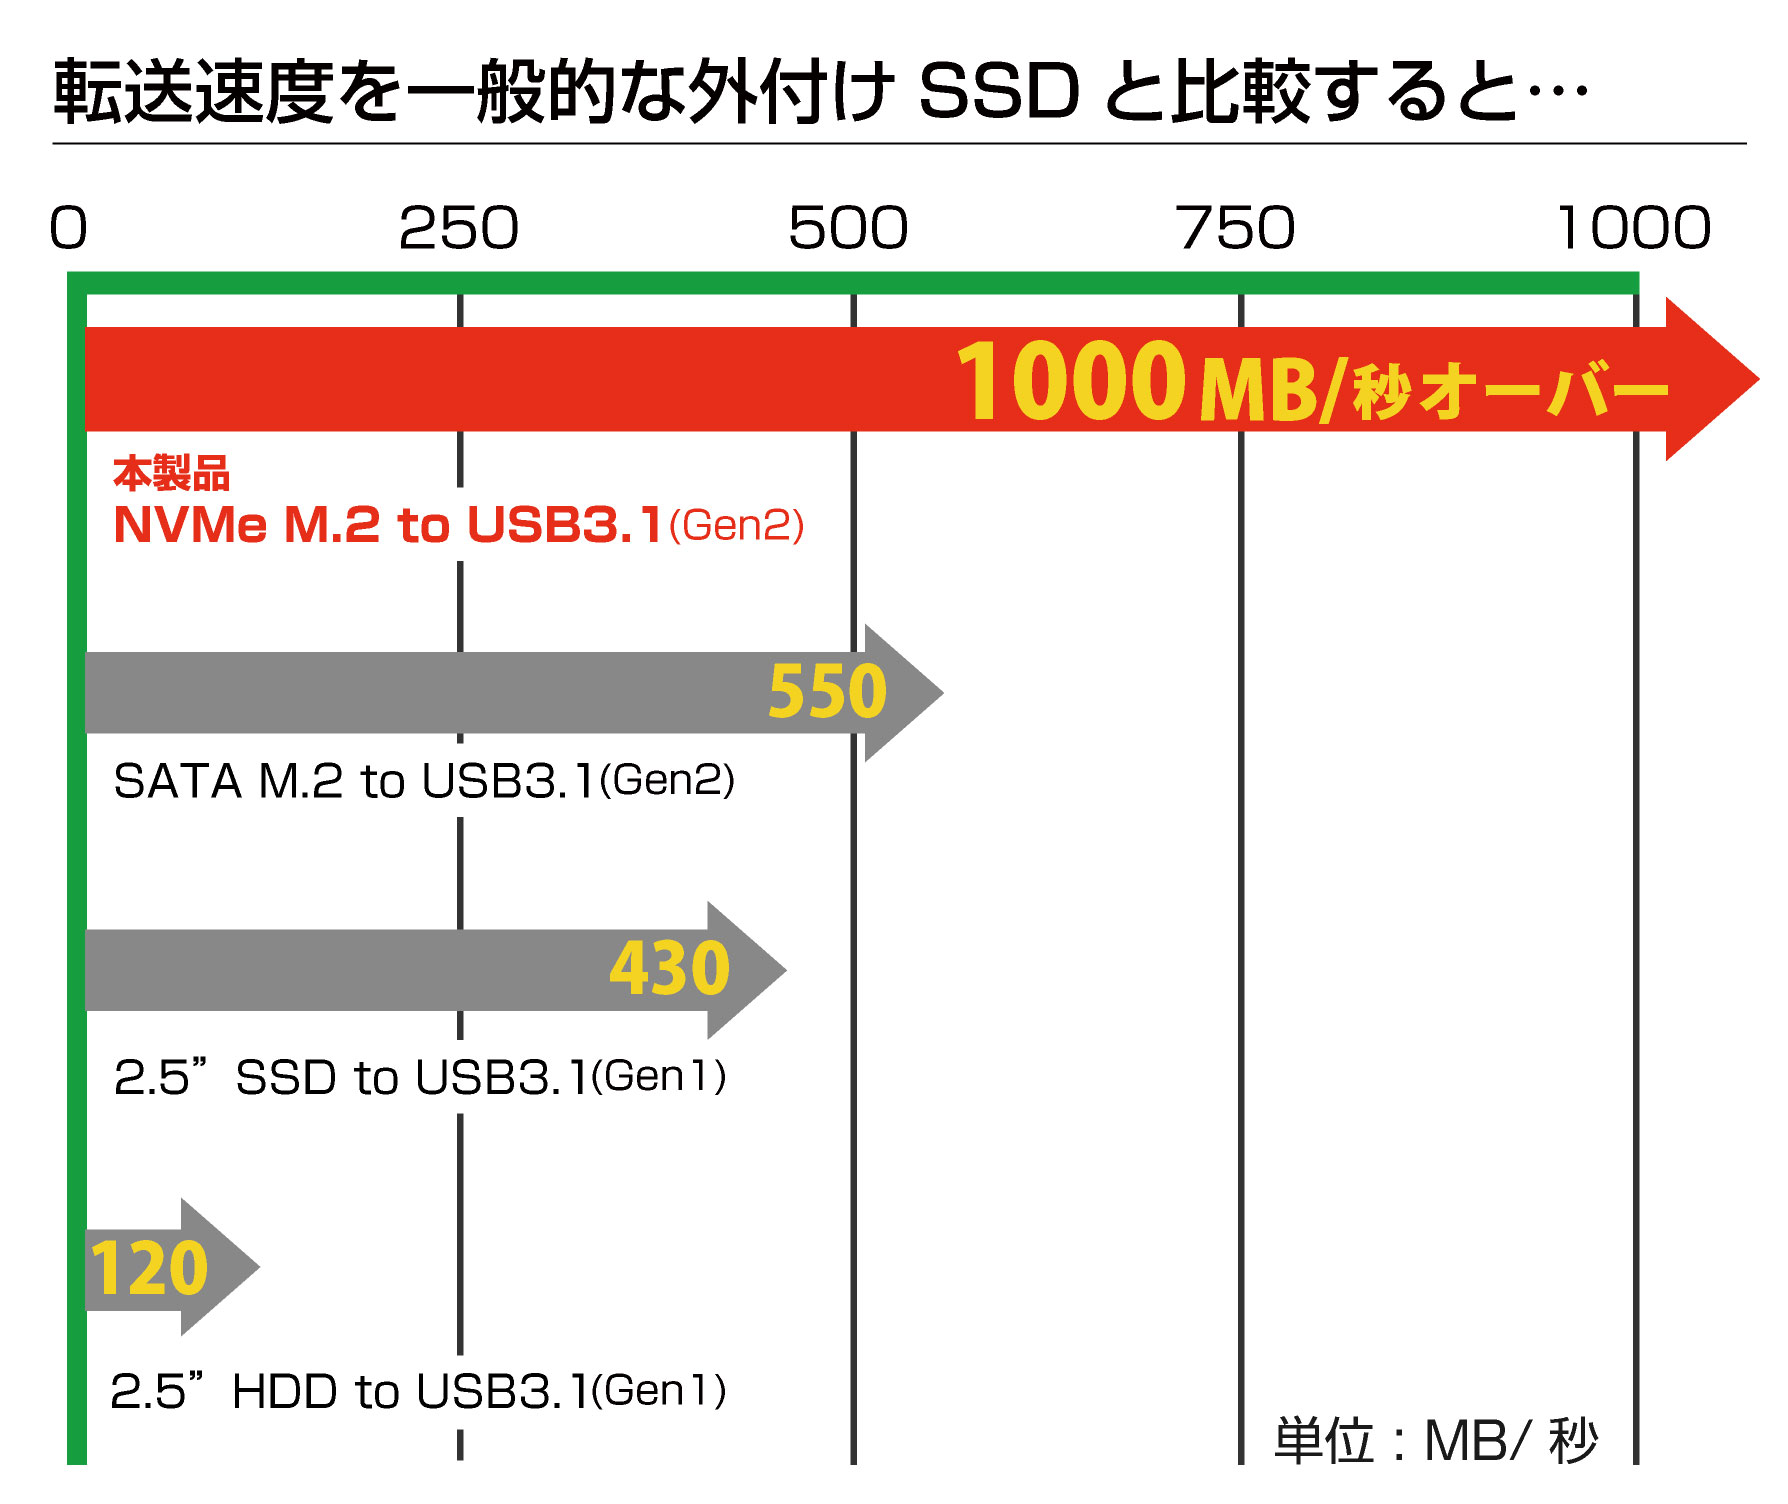 アオテック NVMe 超高速外付けSSD AOK-SSD1000M2NV-U31G2 / AOK-SSD500M2NV-U31G2 アイティプロテック